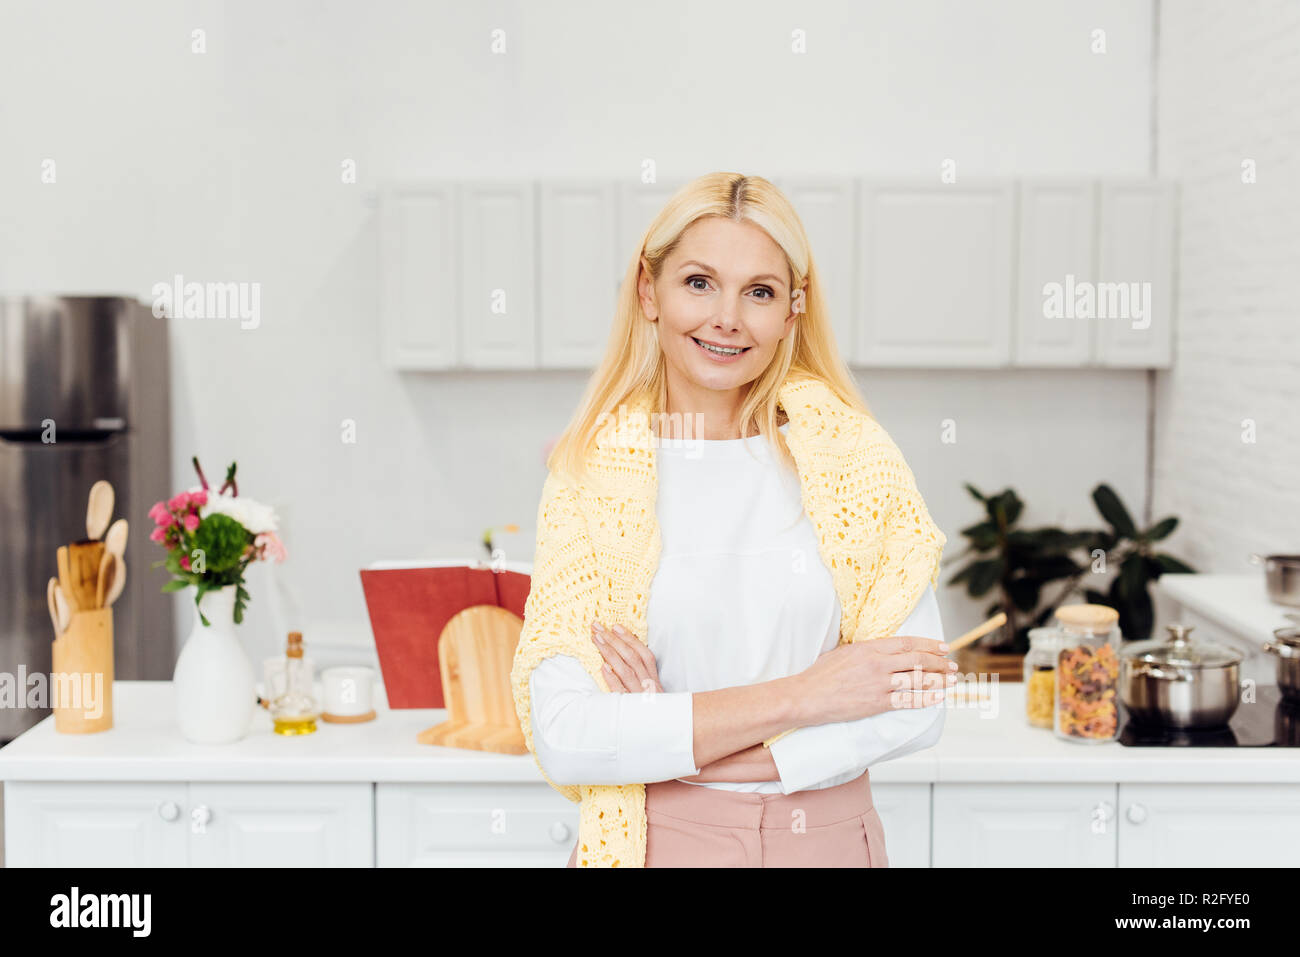 Lächelnde blonde Frau mit gekreuzten Armen stehen in der Küche Stockfoto